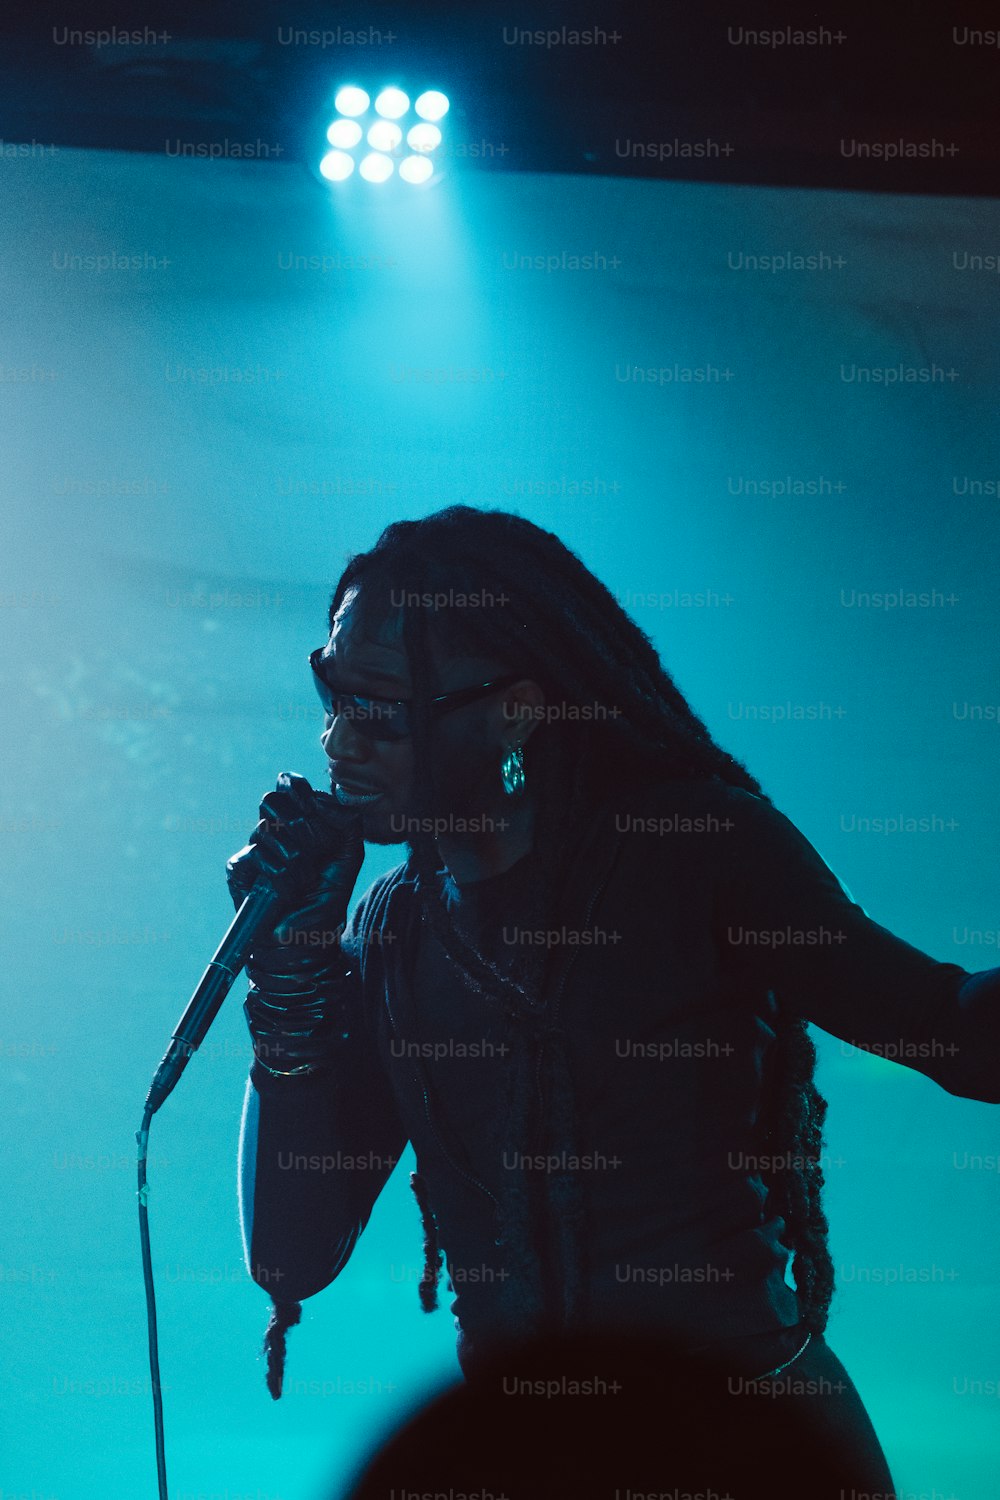 Eine Frau, die auf der Bühne in ein Mikrofon singt